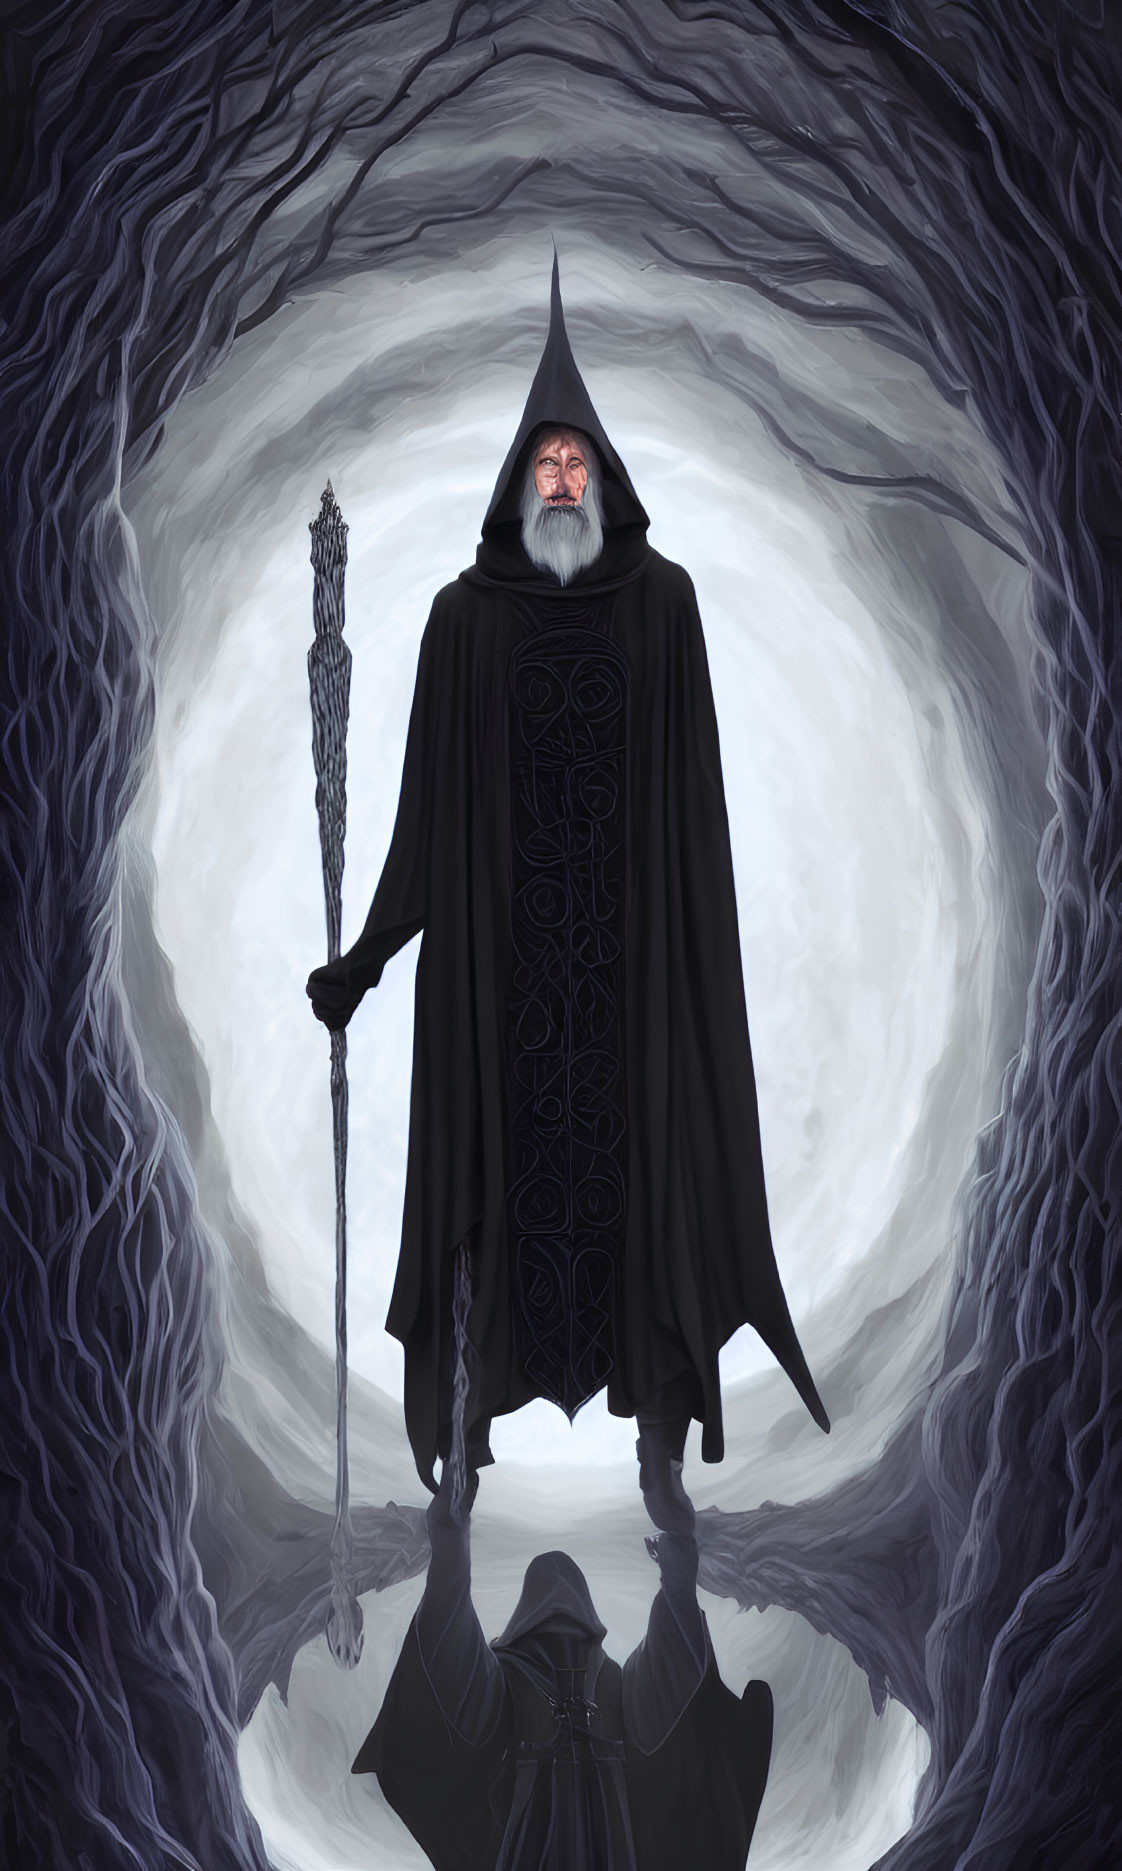 Wizard in Black Cloak with Staff in Mystical Vortex